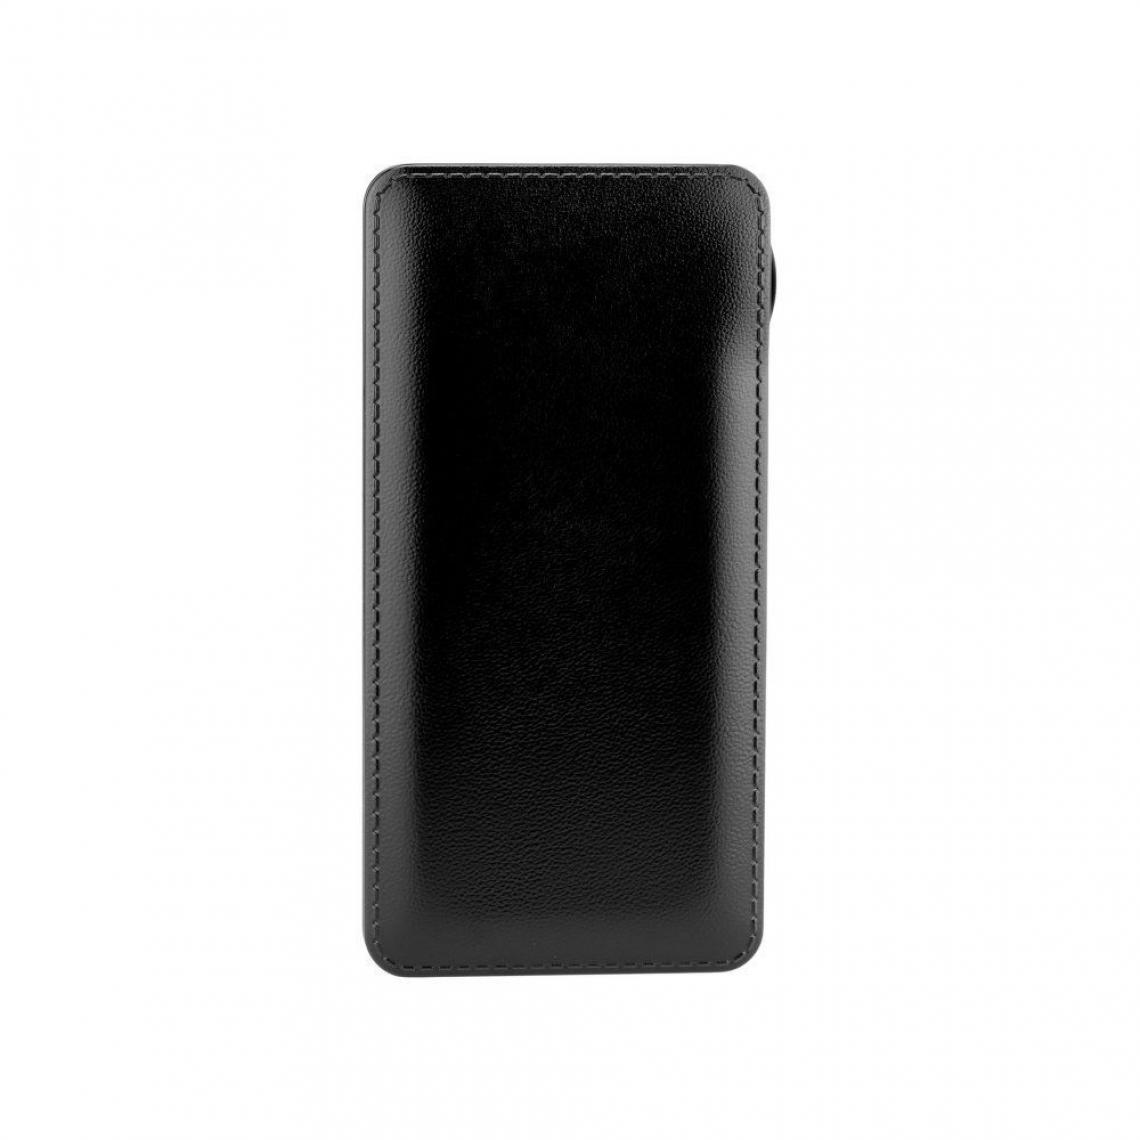 Ozzzo - Chargeur batterie externe 30000 mAh powerbank ozzzo noir pour LG Q Stylus+ - Autres accessoires smartphone